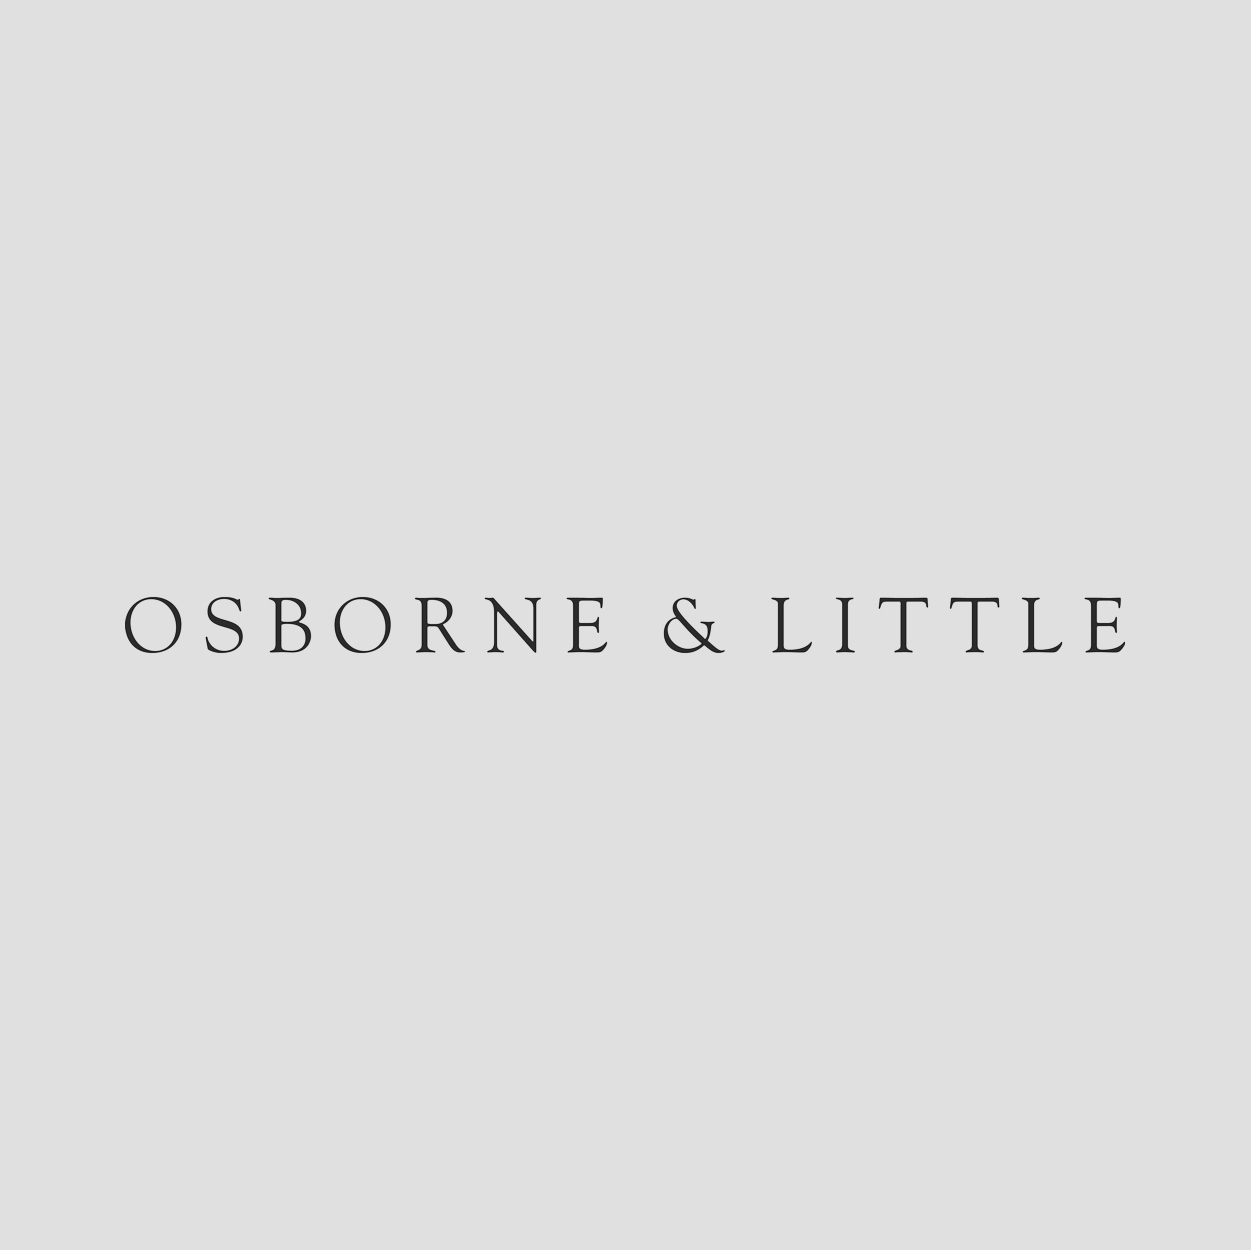 Osborne & Little logo